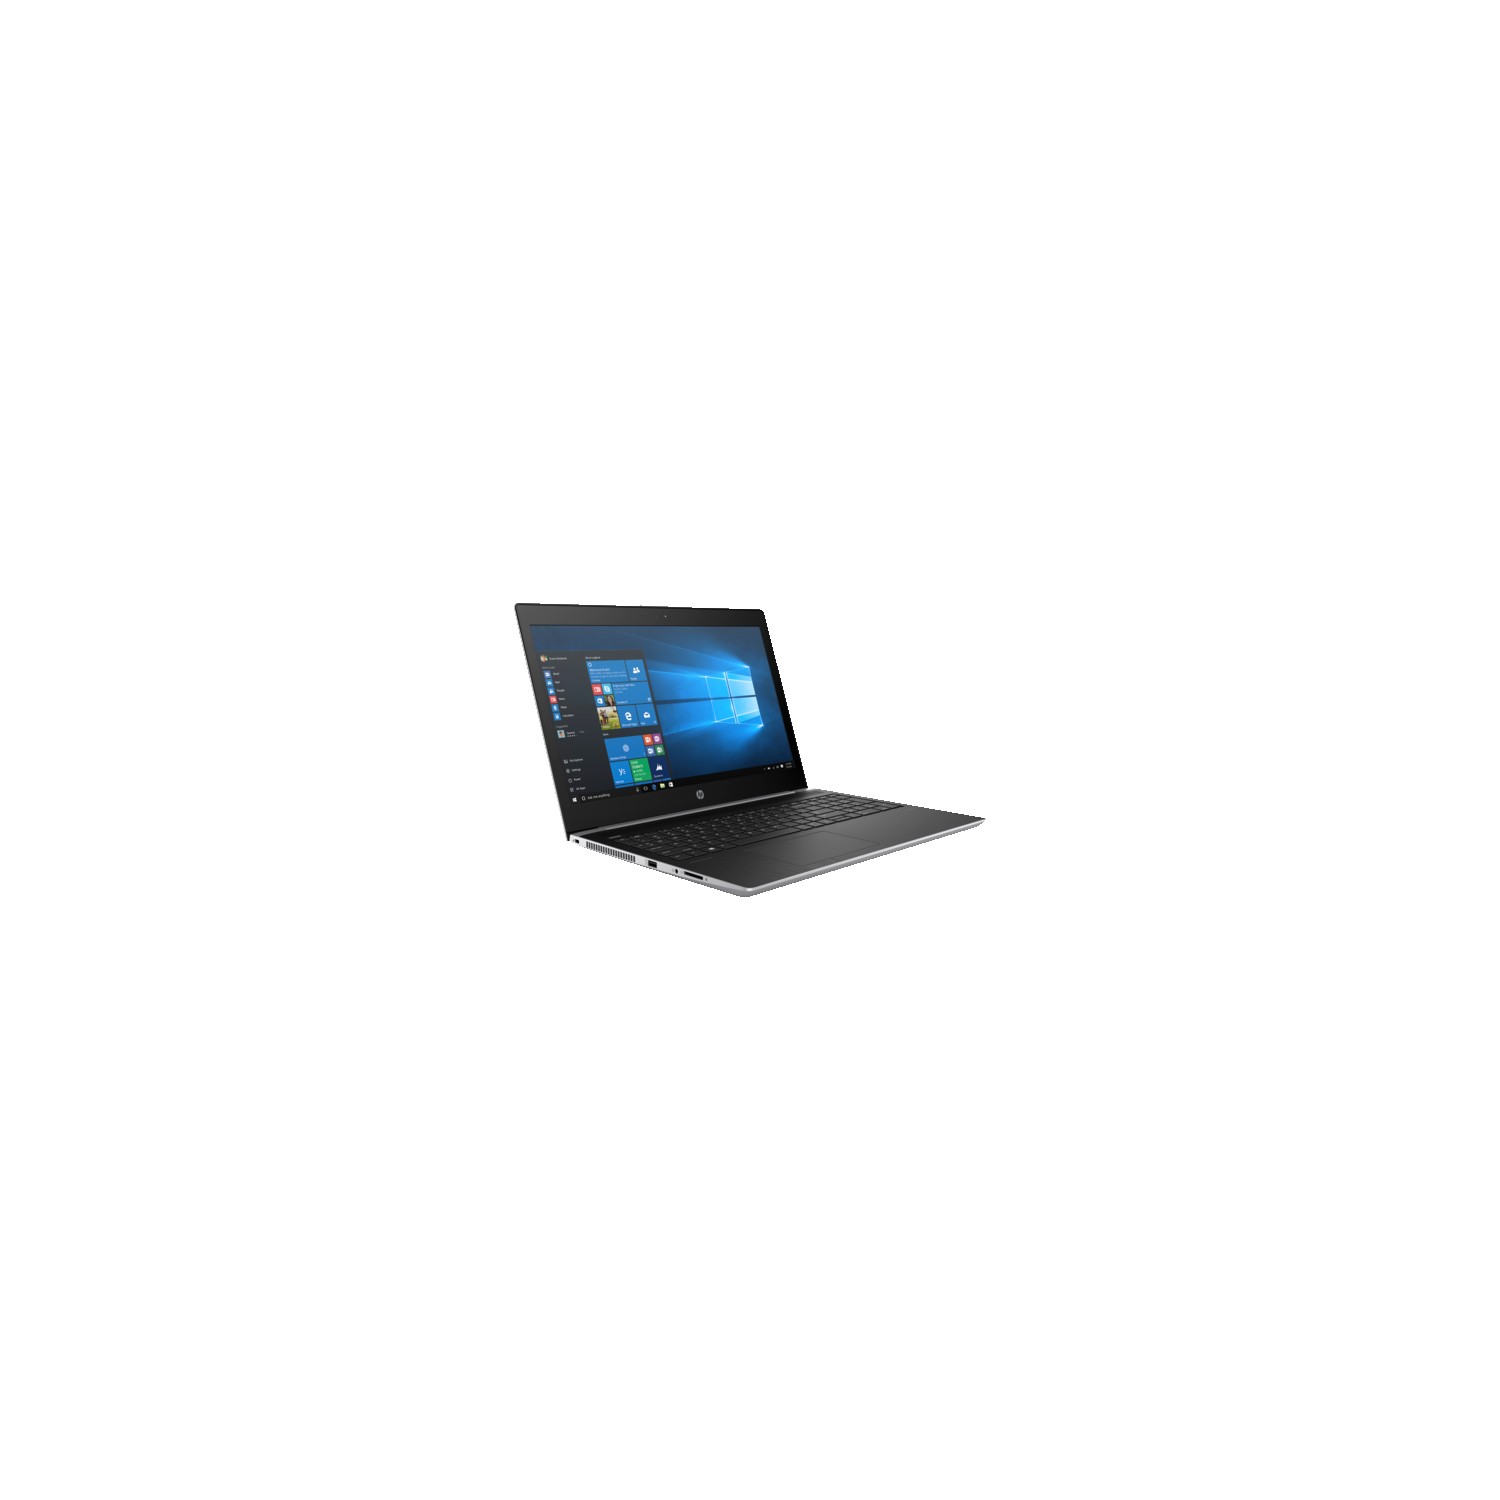 HP ProBook 450 G5 15.6" Laptop - (Intel Core i7-8550U / 256GB SSD / 8GB RAM / Windows 10) - (2TA31UT#ABA)